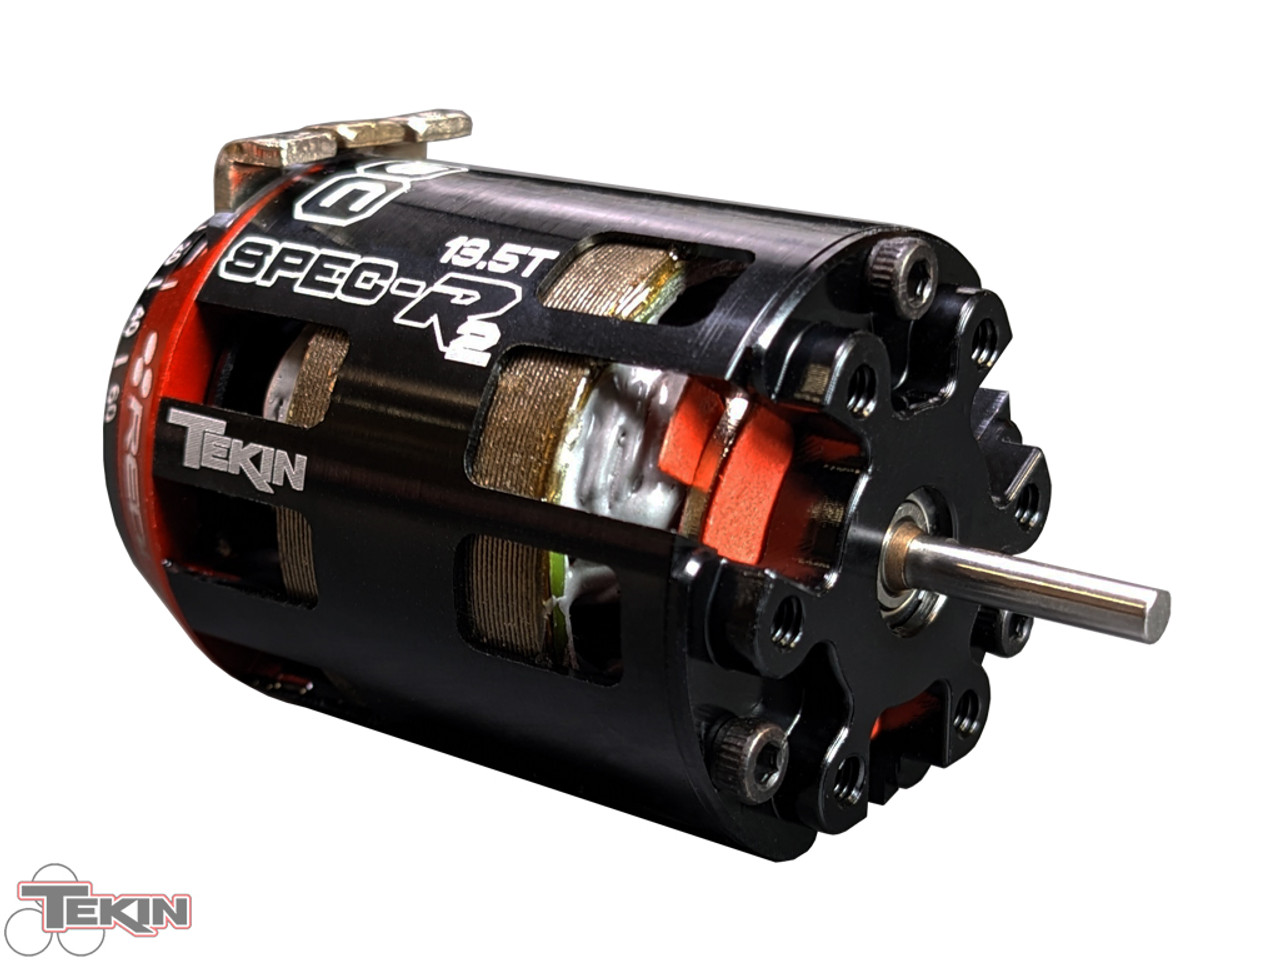 SPEC-R2 13.5T GEN4 ELITE Brushless Motor